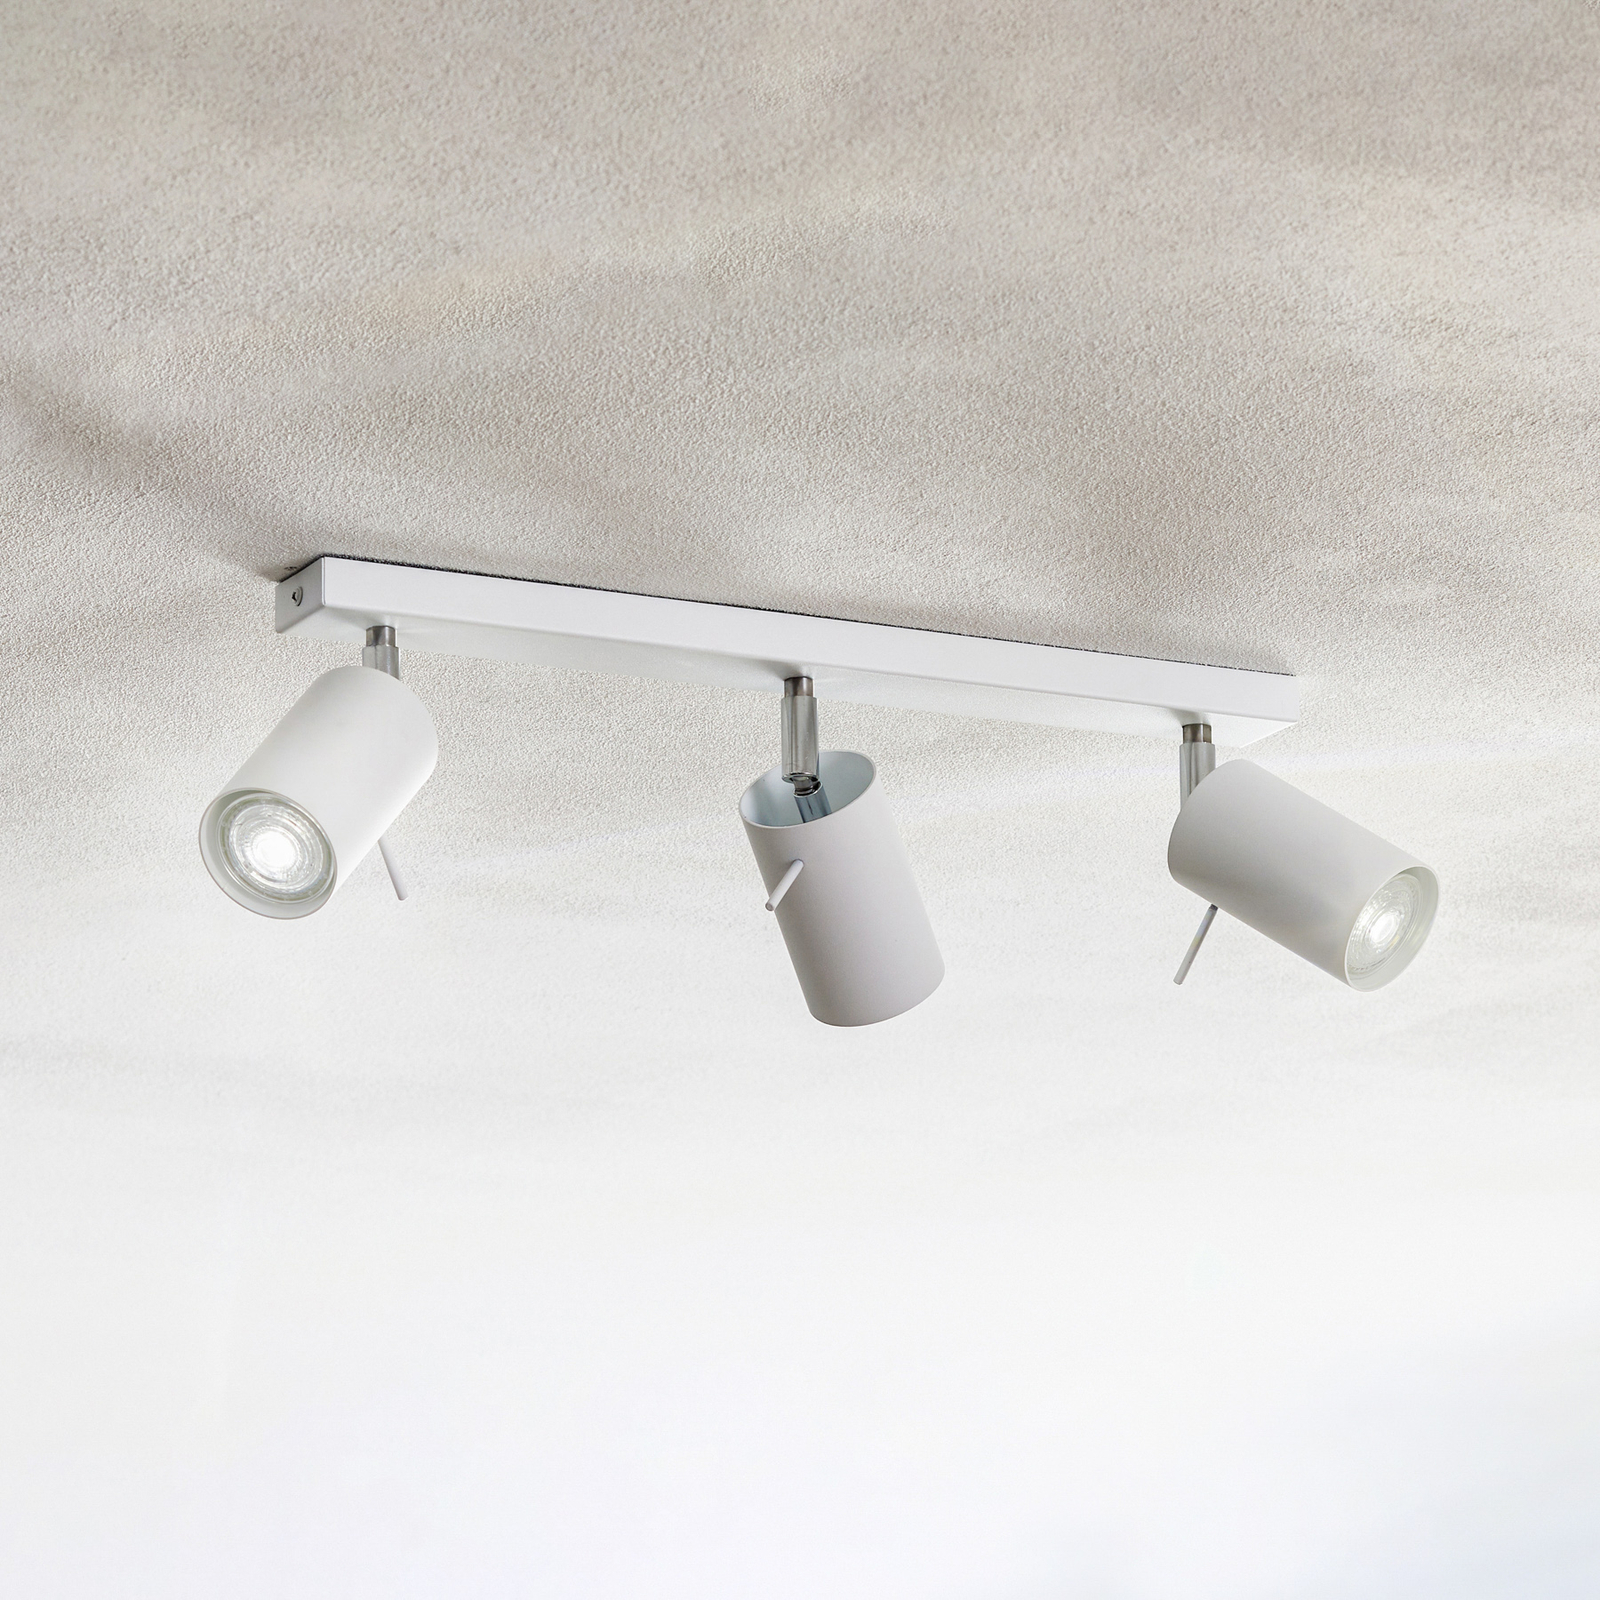 Round ceiling spotlight, white, 3-bulb, linear